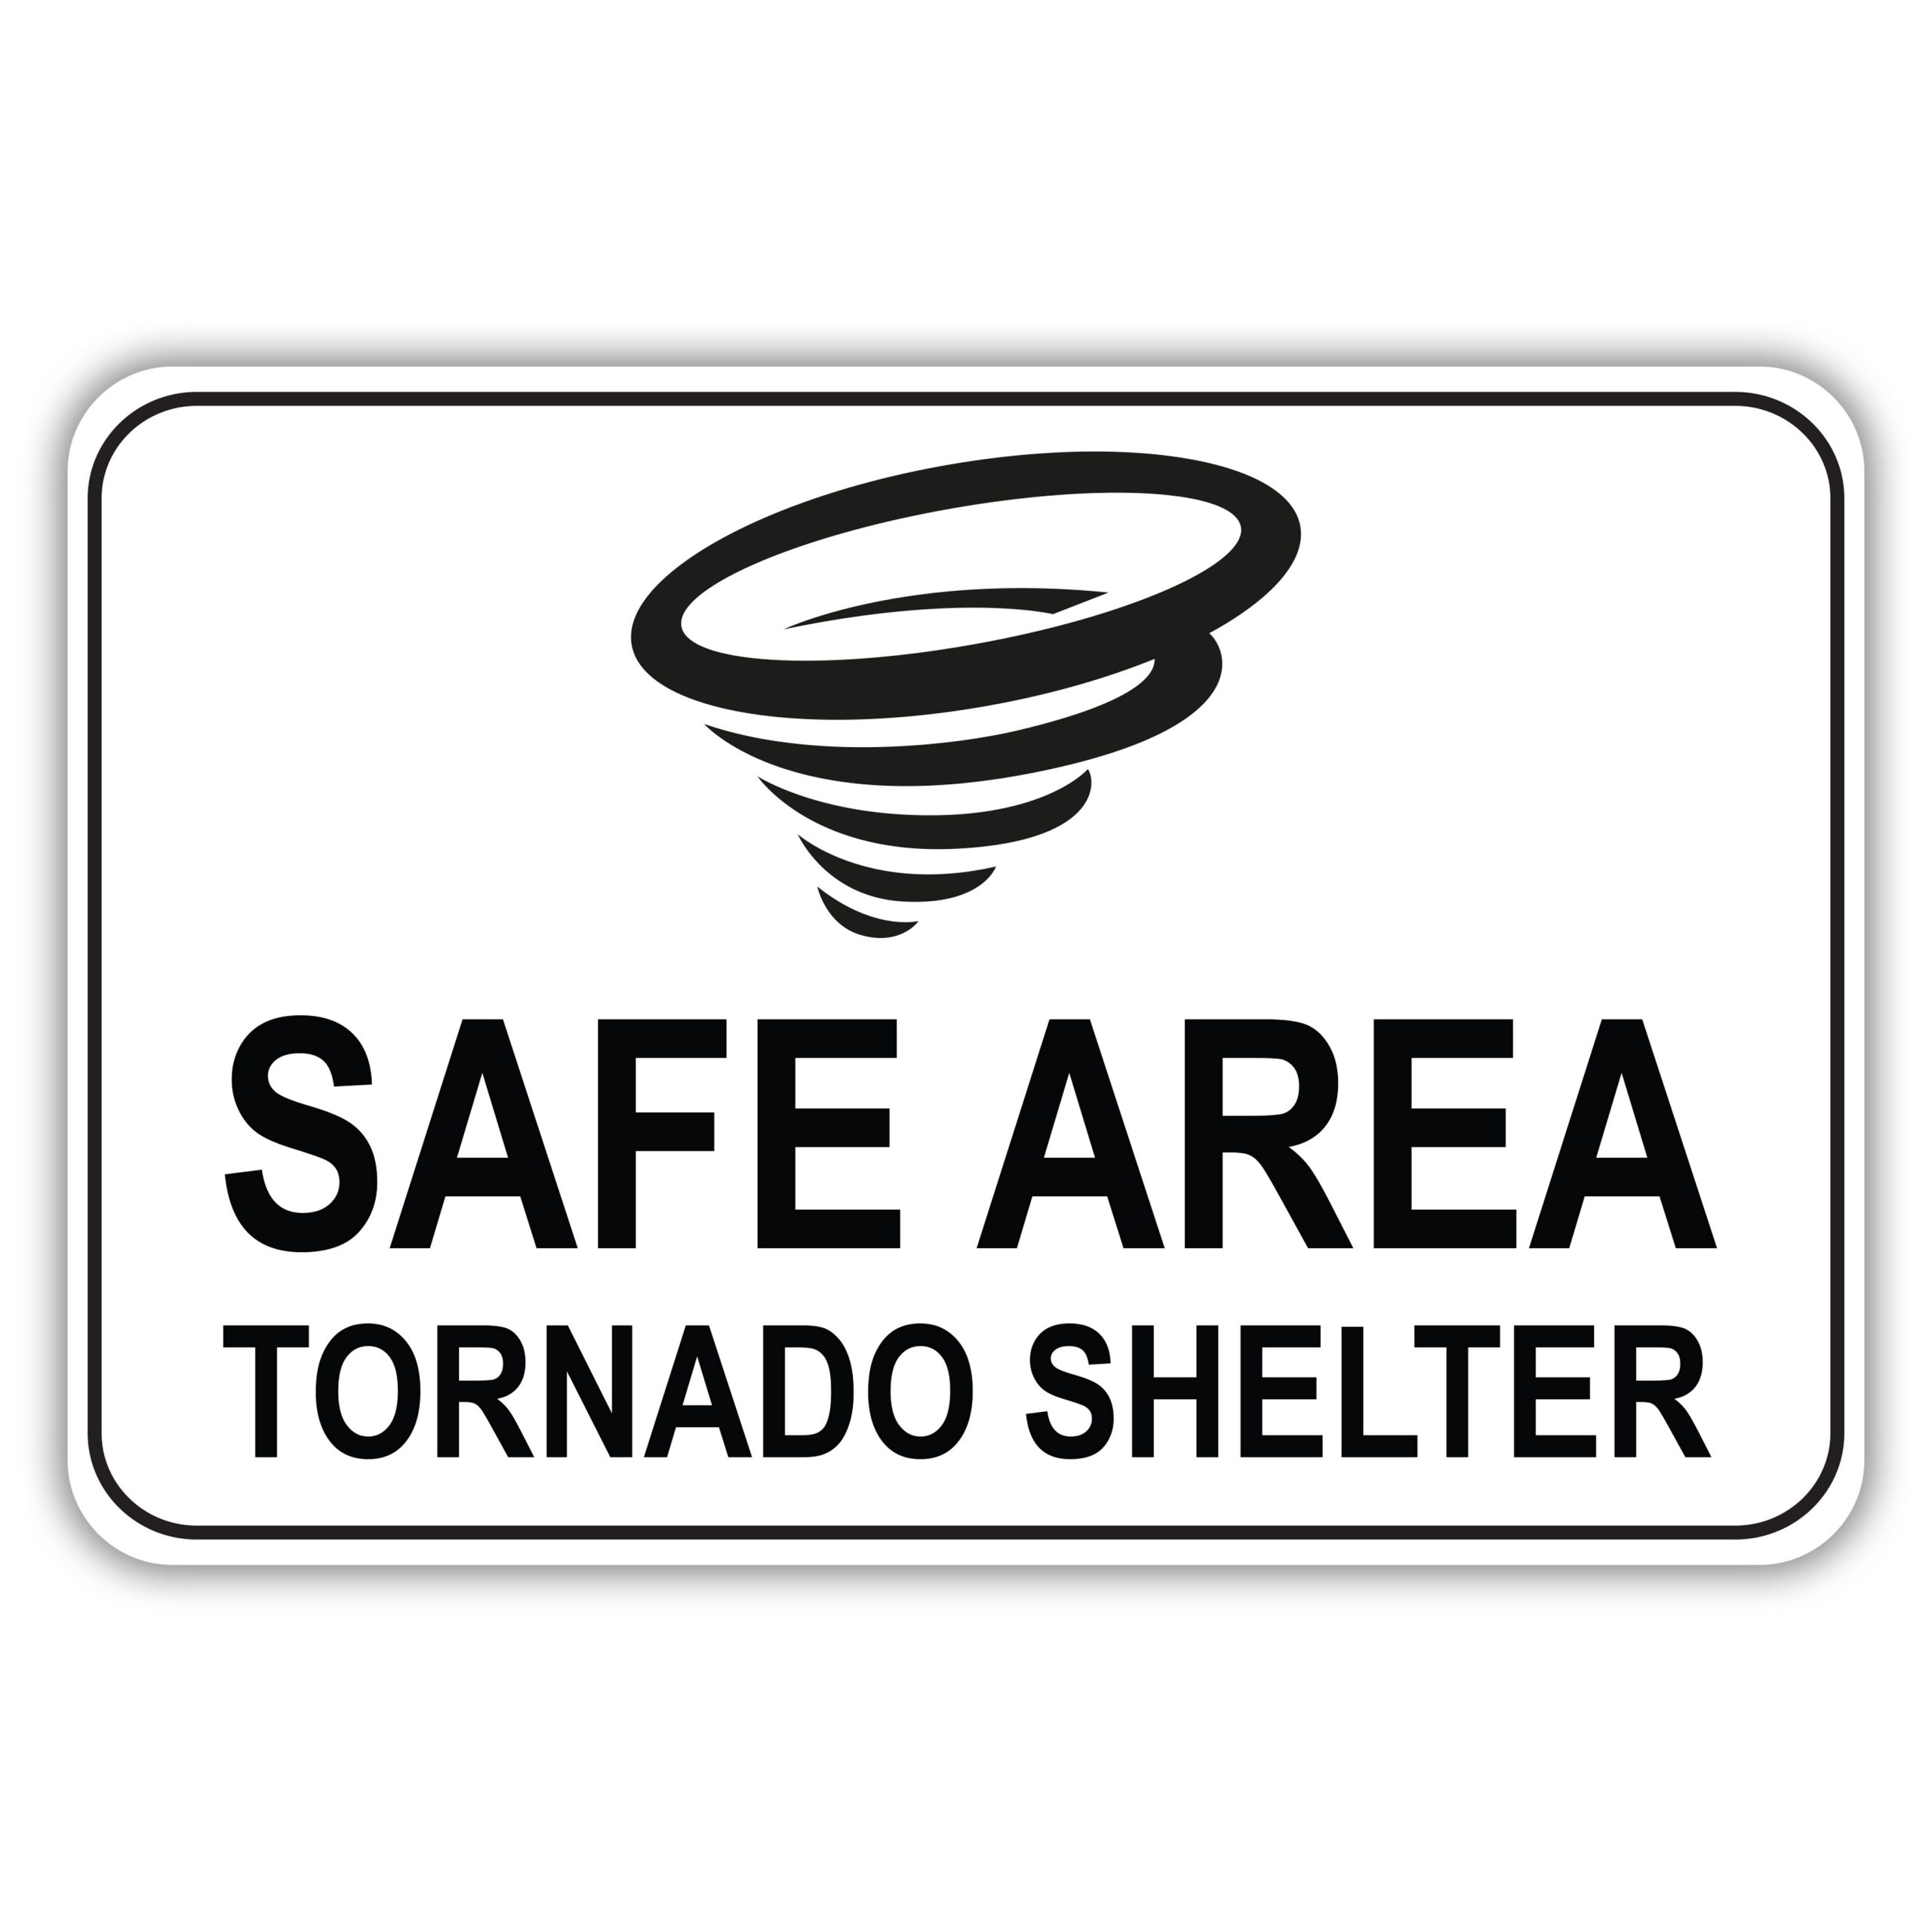 Printable Tornado Safe Room Signs